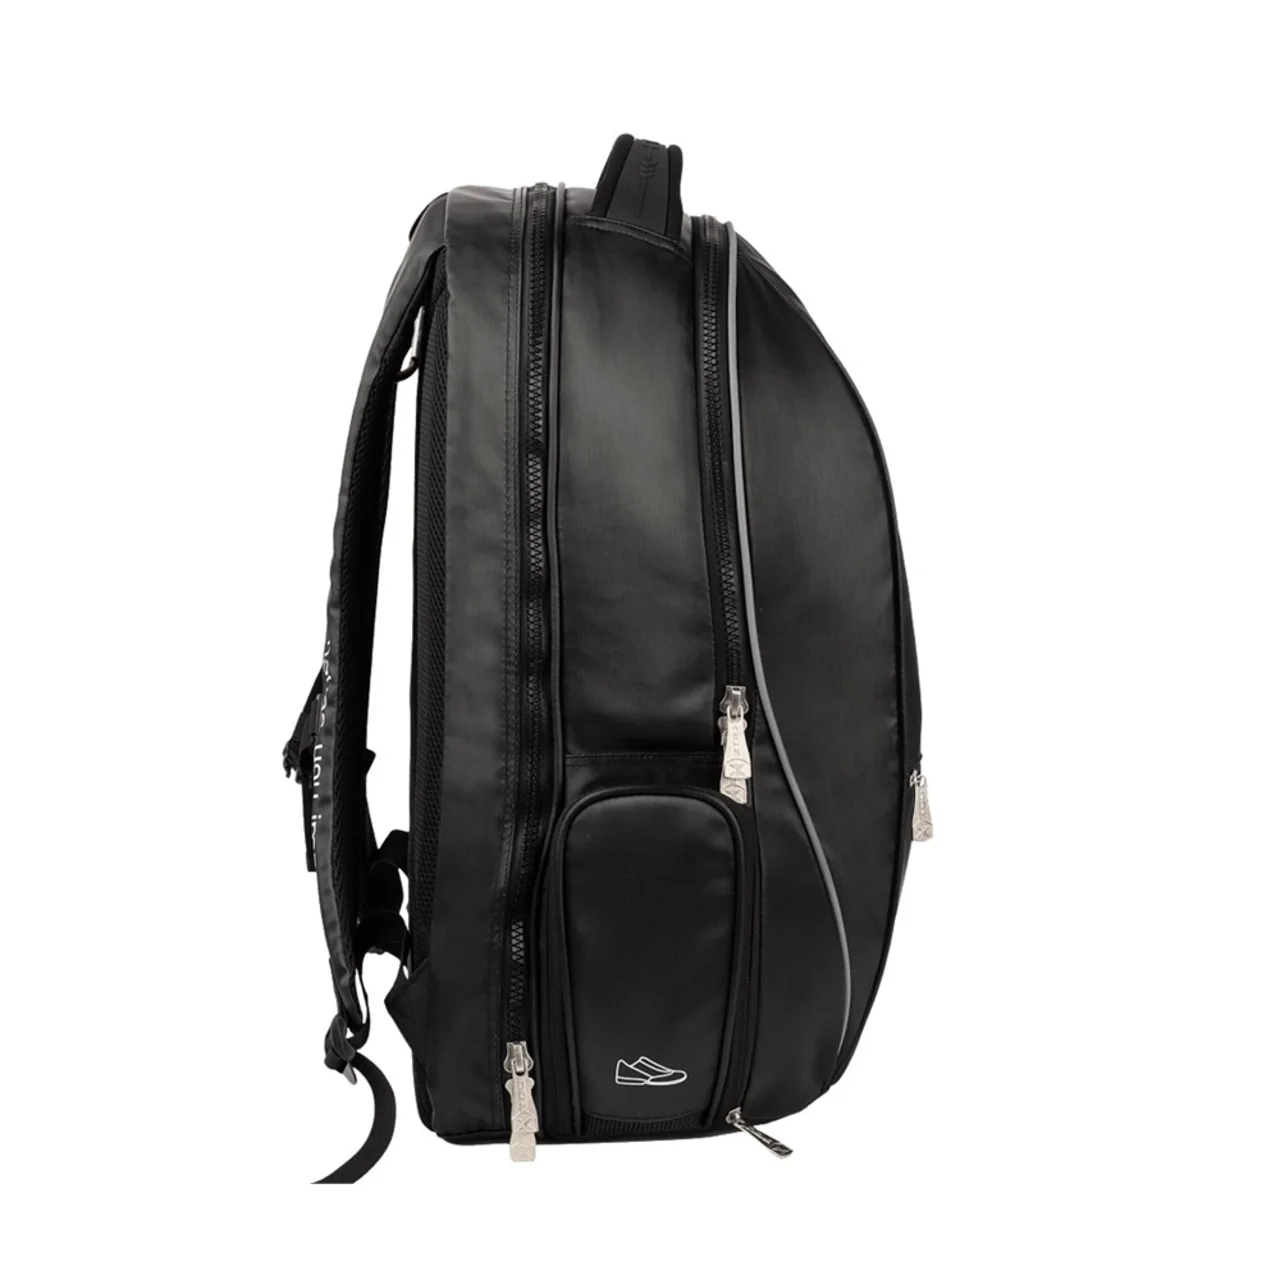 Nox Backpack Pro Series WPT Black